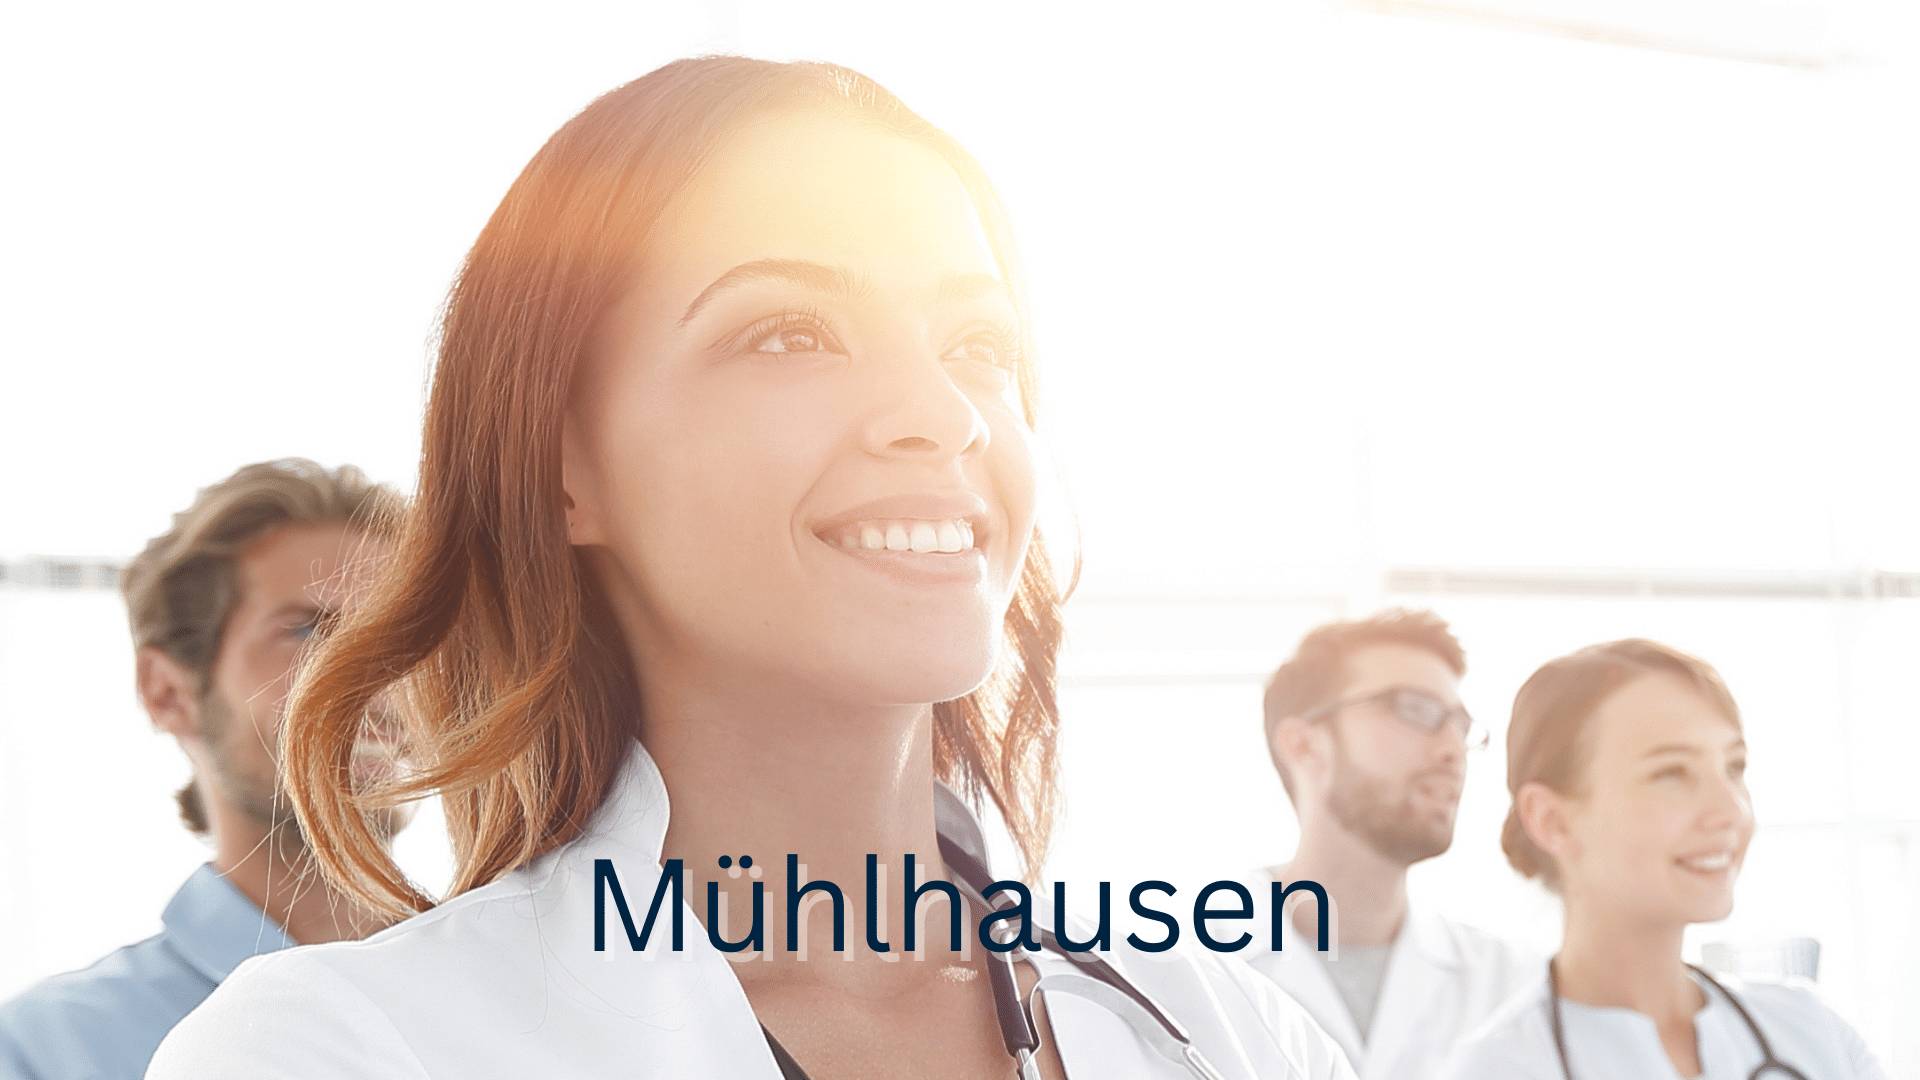 Stockbild mit vier lächelnden Medizinern und Mühlhausen als Schriftzug 